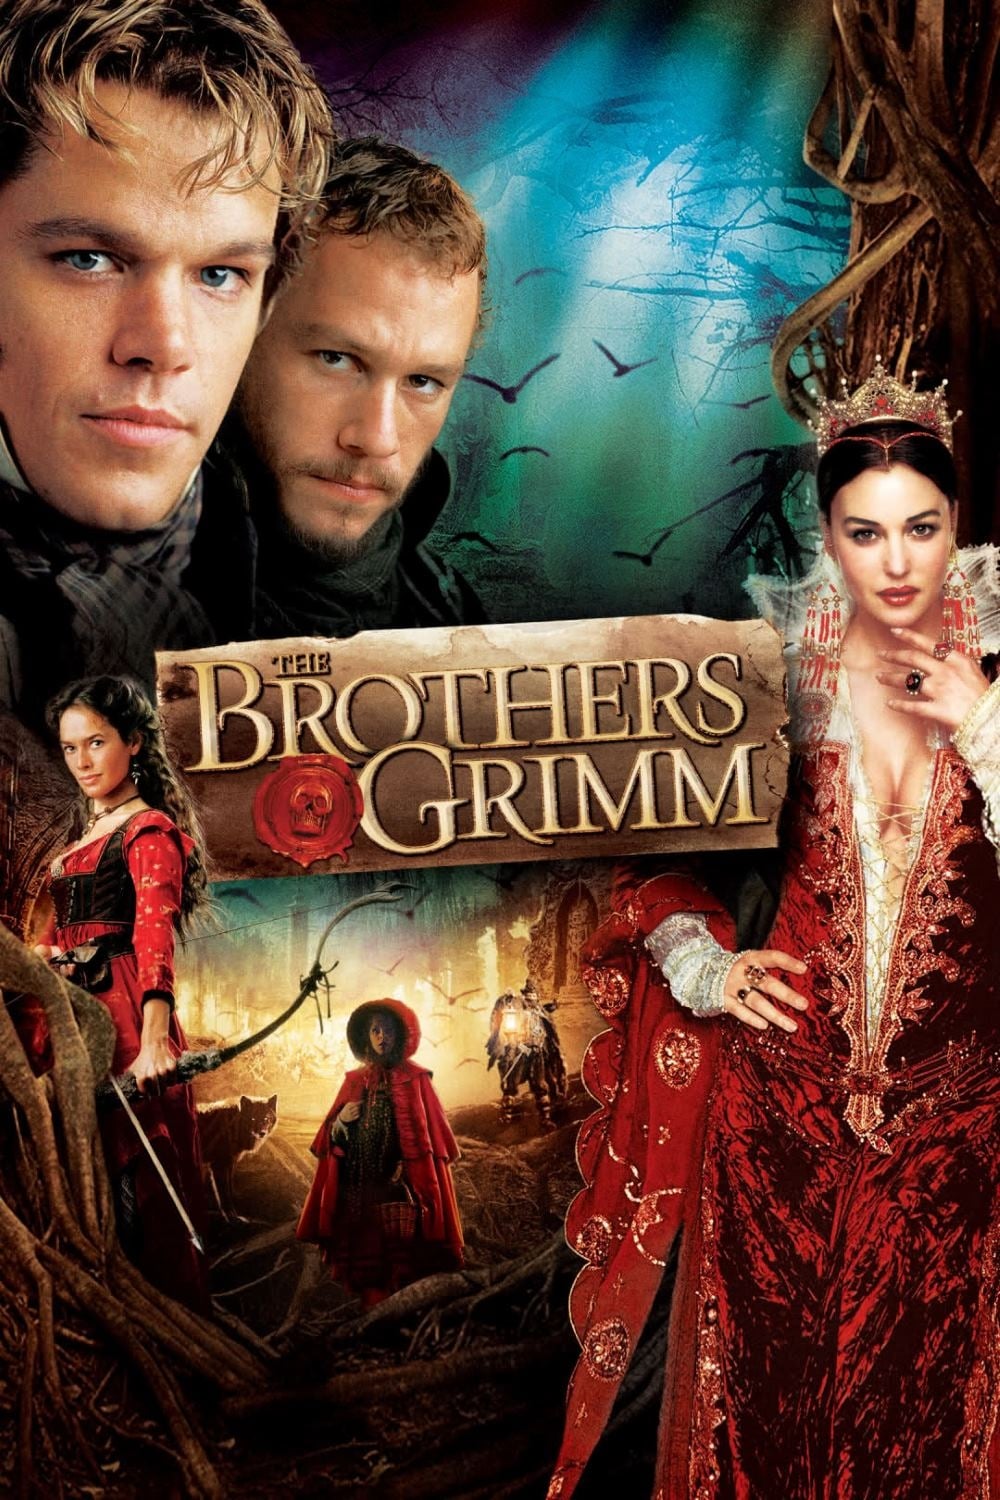 Os Irmãos Grimm (2005)